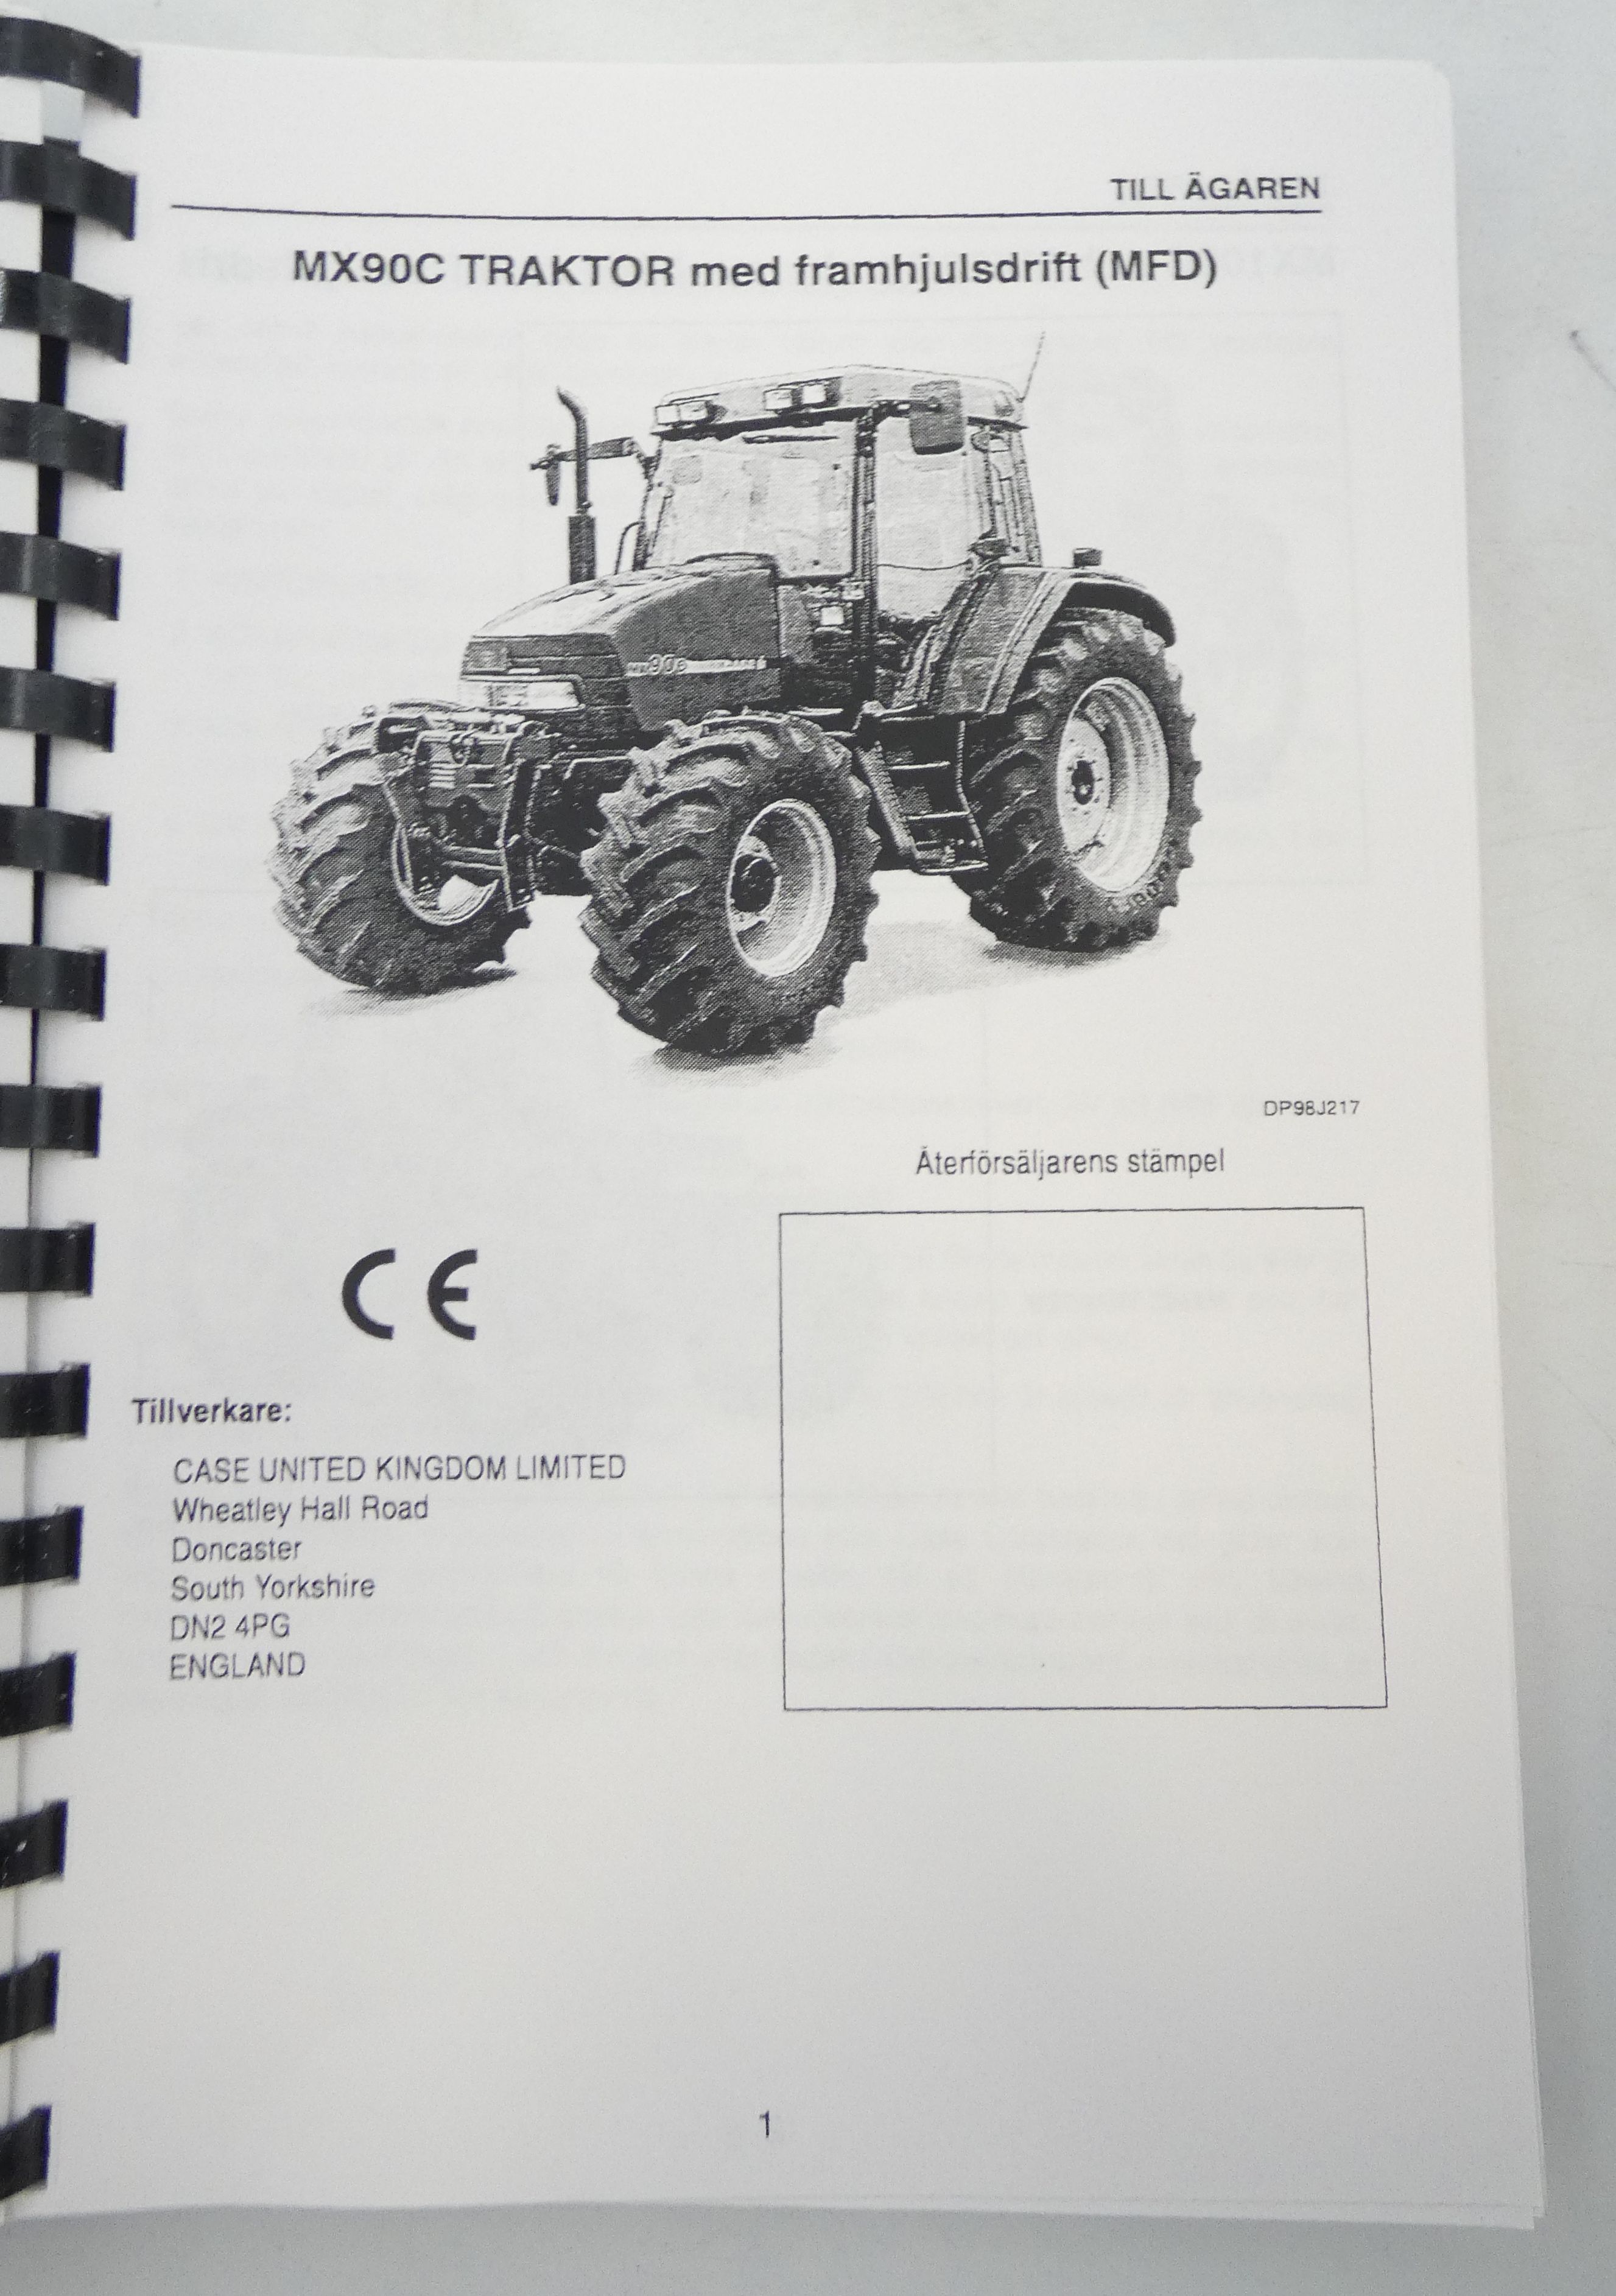 CaseIH Maxxum MX80C, MX90C och MX100C traktorer instruktionsbok